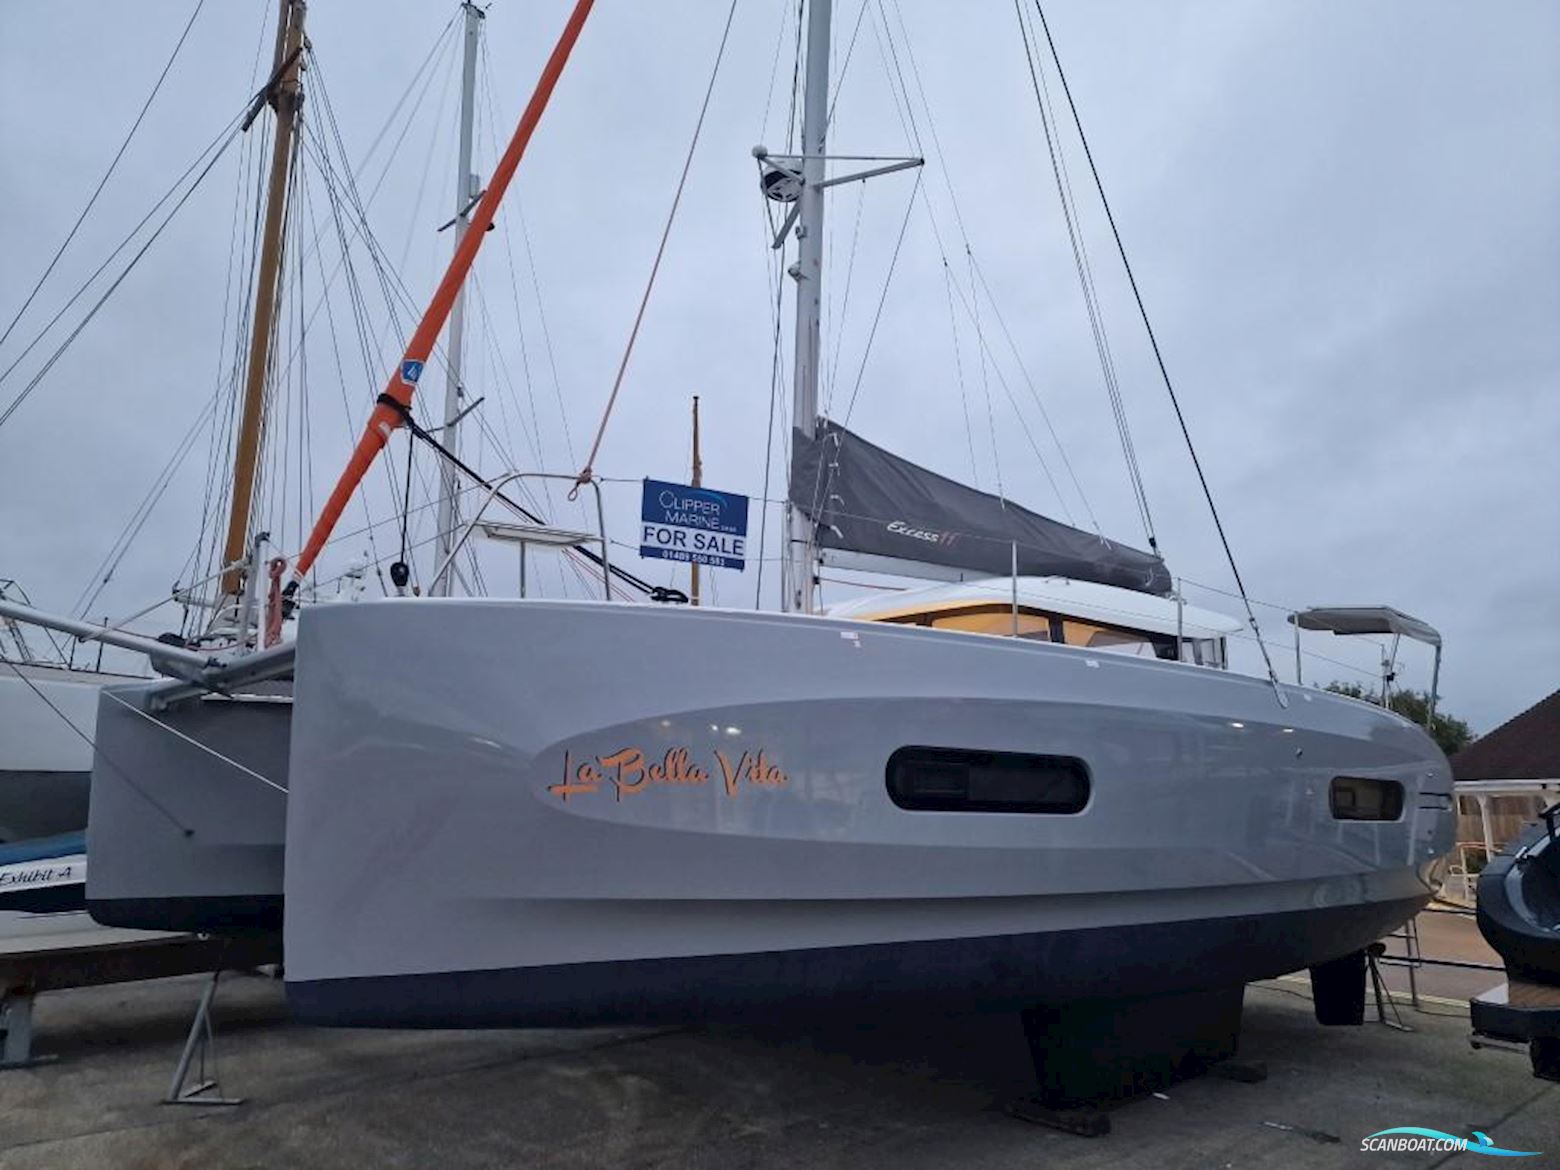 Excess 11 Motorbåt 2022, med Yanmar motor, Spanien